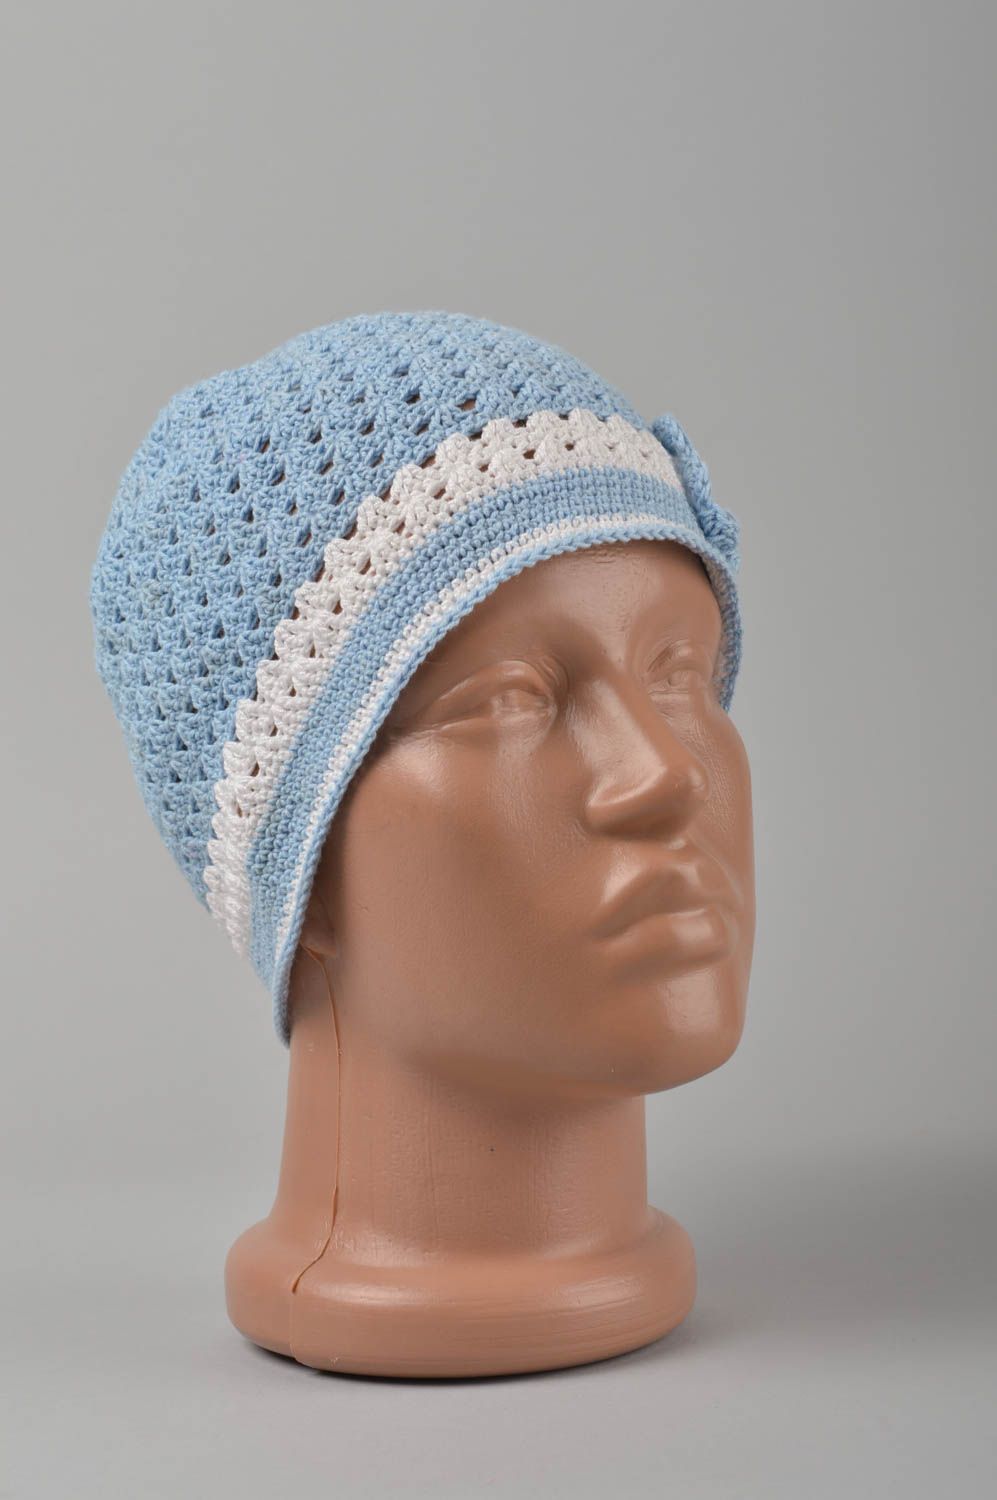 Handmade hat baby hat crocheted hat warm hat spring hat designer hat for girls photo 1